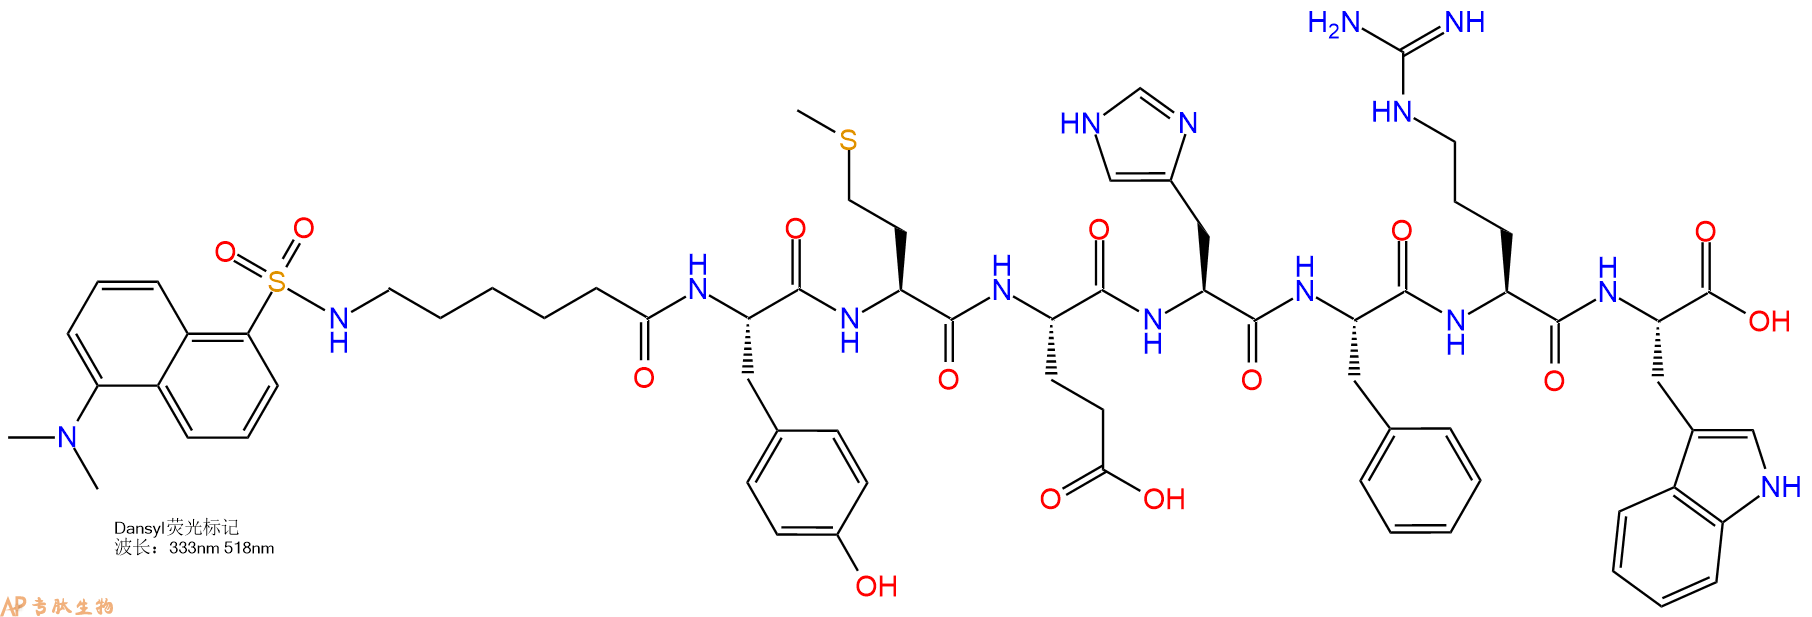 专肽生物产品Dansyl-Ahx-Tyr-Met-Glu-His-Phe-Arg-Trp-COOH